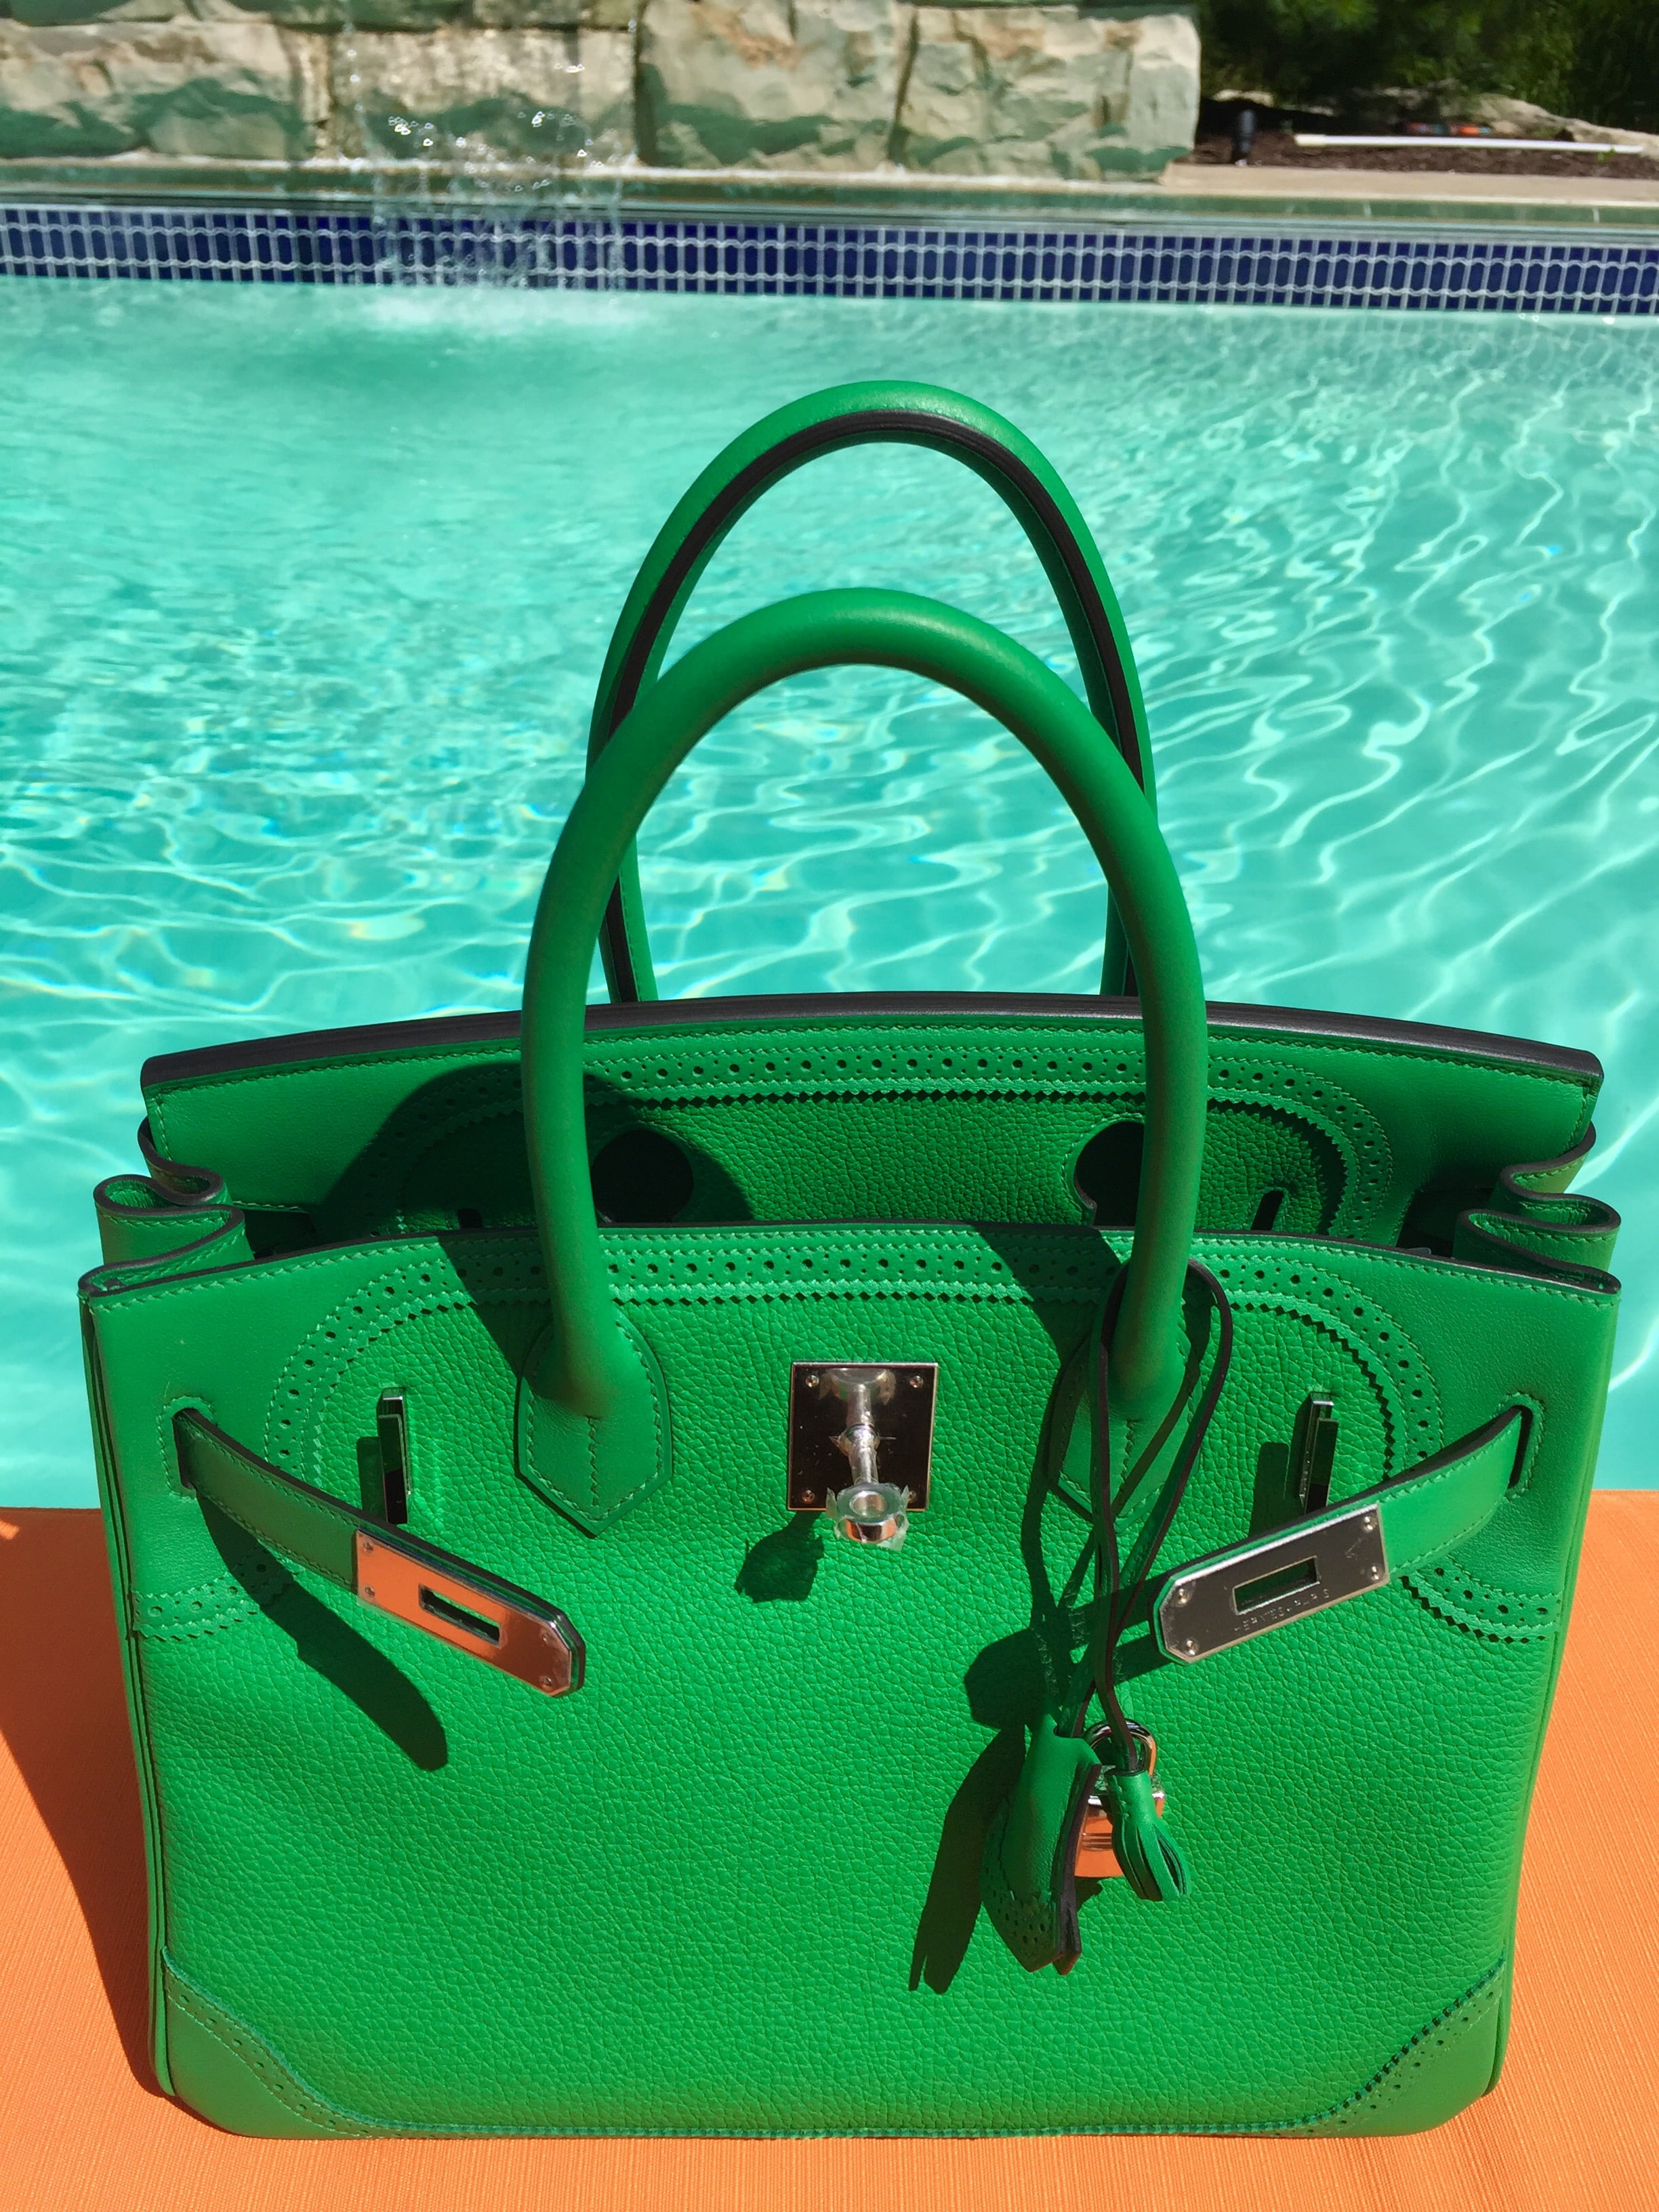 My Favorite Hermes Birkin Grass Green Bag